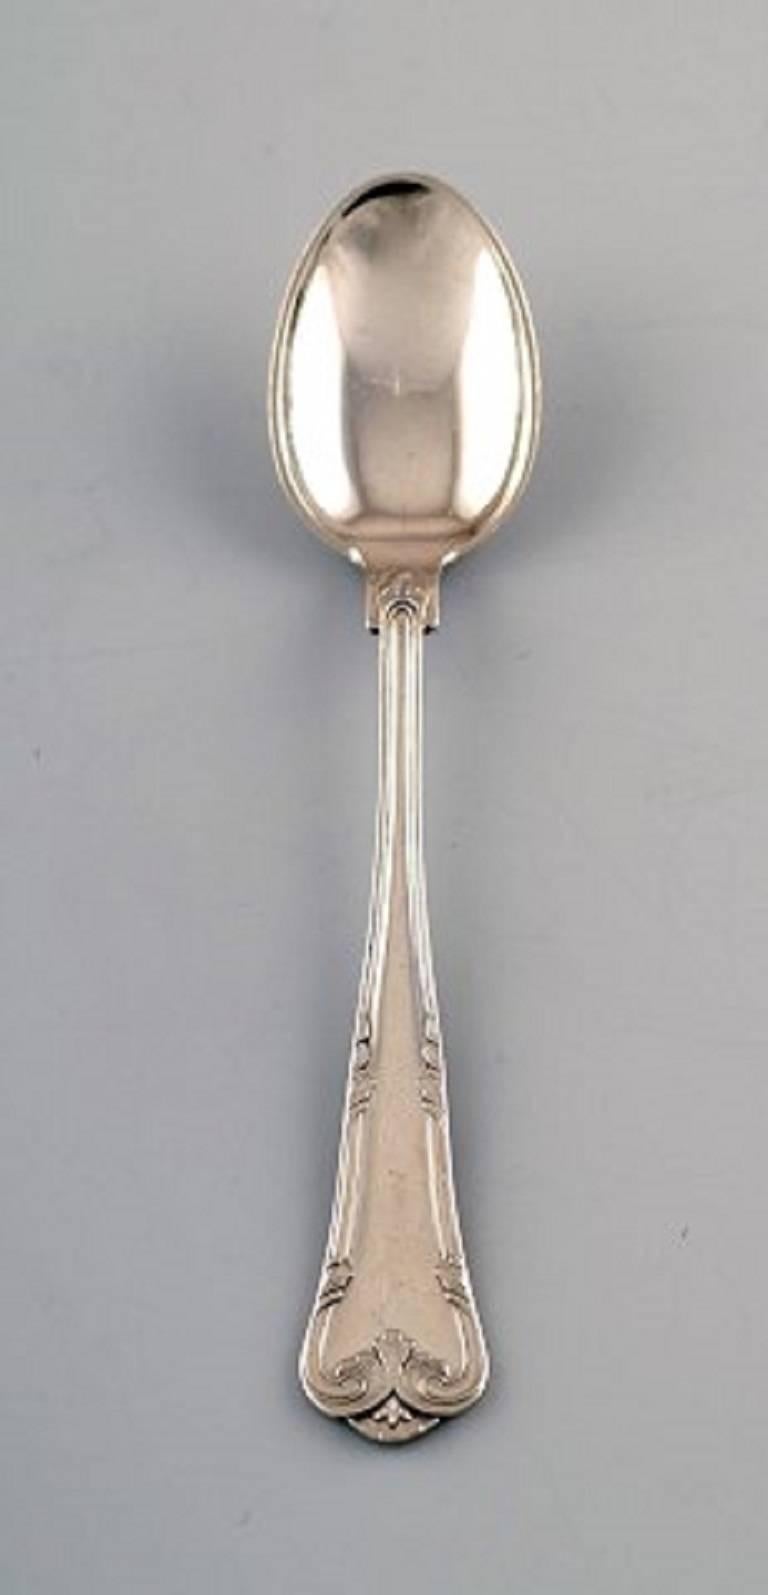 12 tea spoons, Cohr, Denmark, 